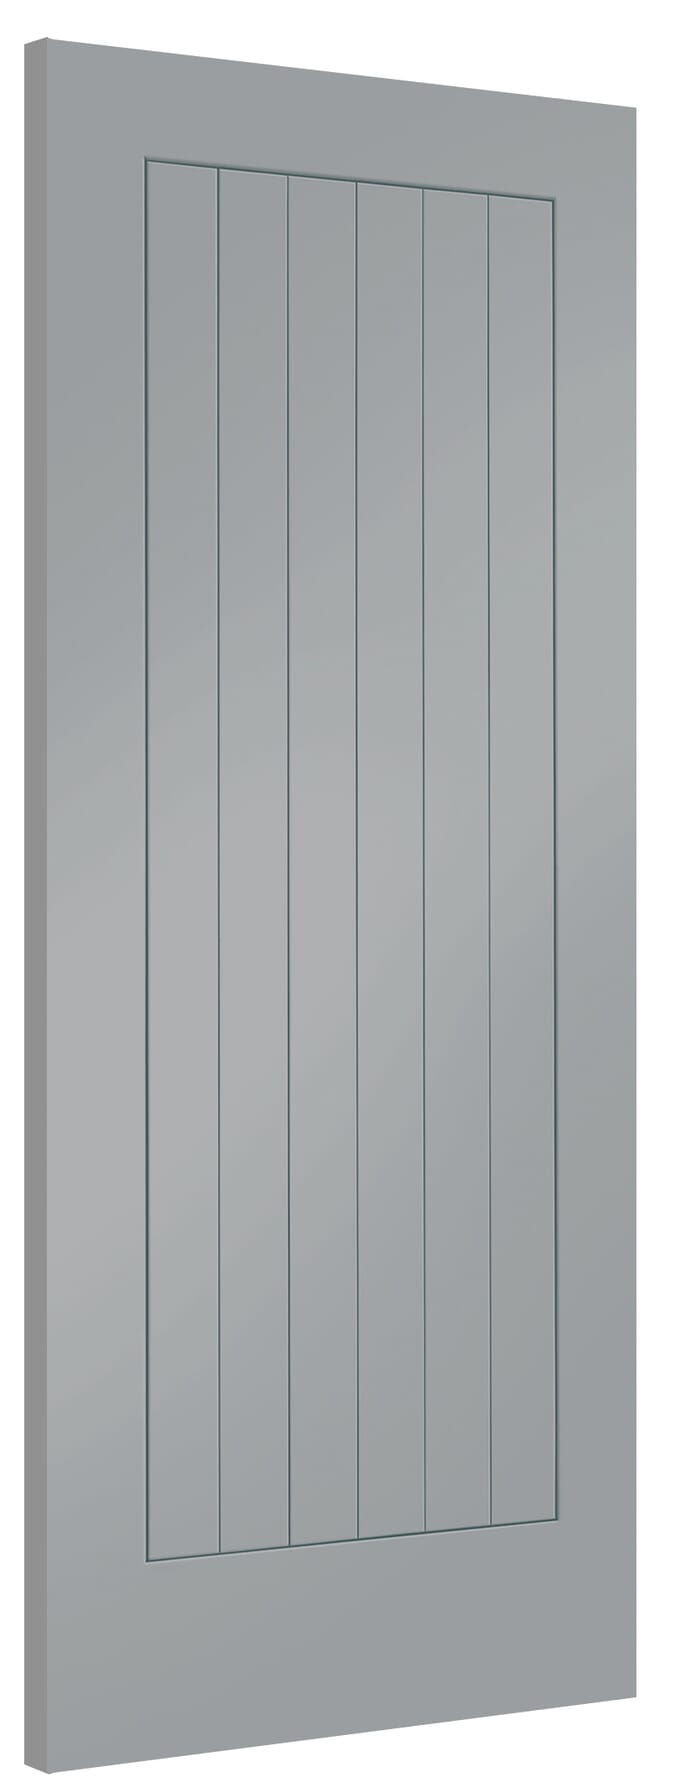 533x1981x35mm (21") Suffolk Storm Grey Internal Doors